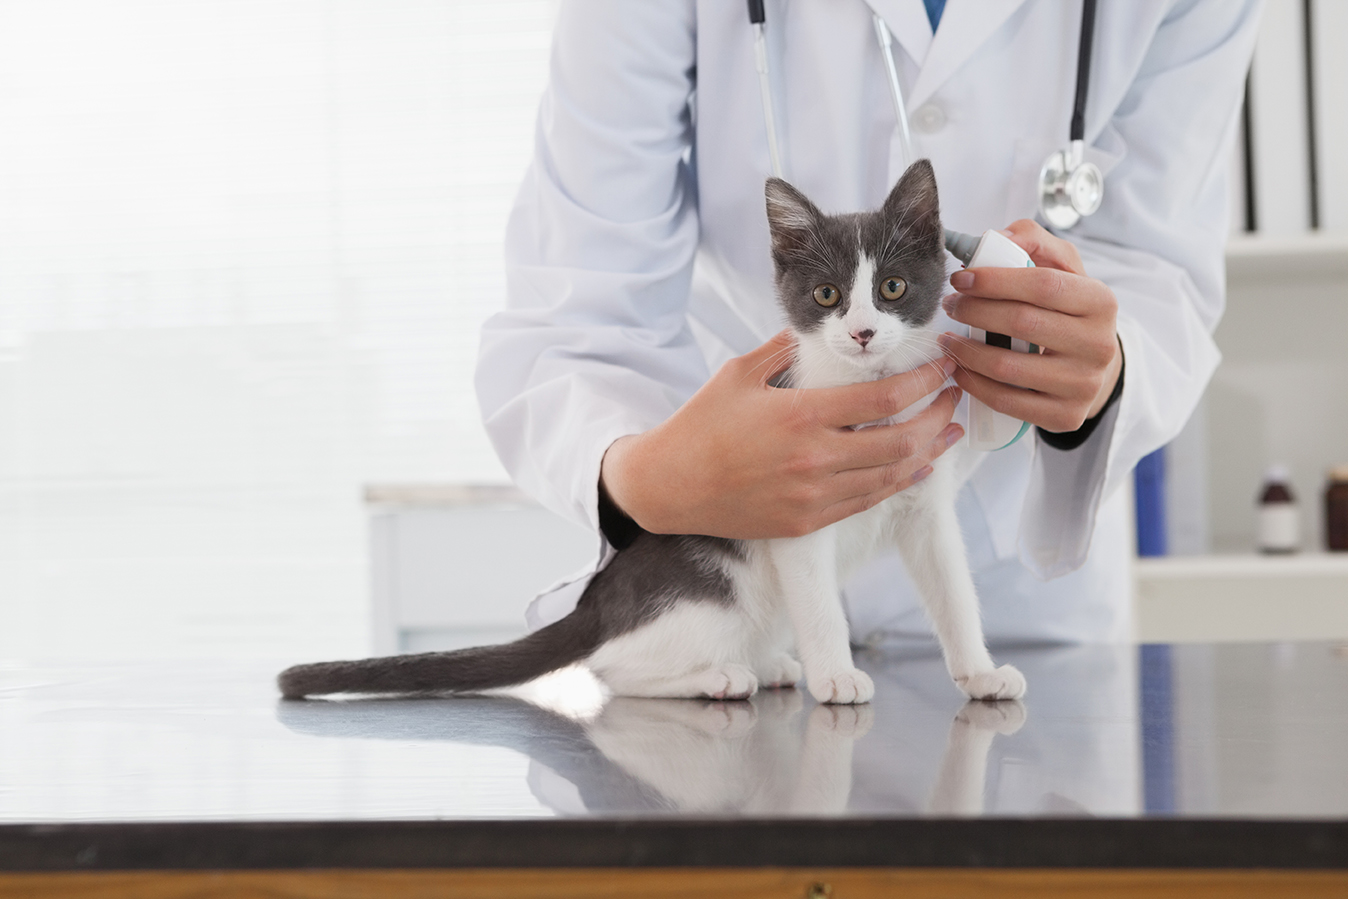 Vet examining a cute kitten in medical office